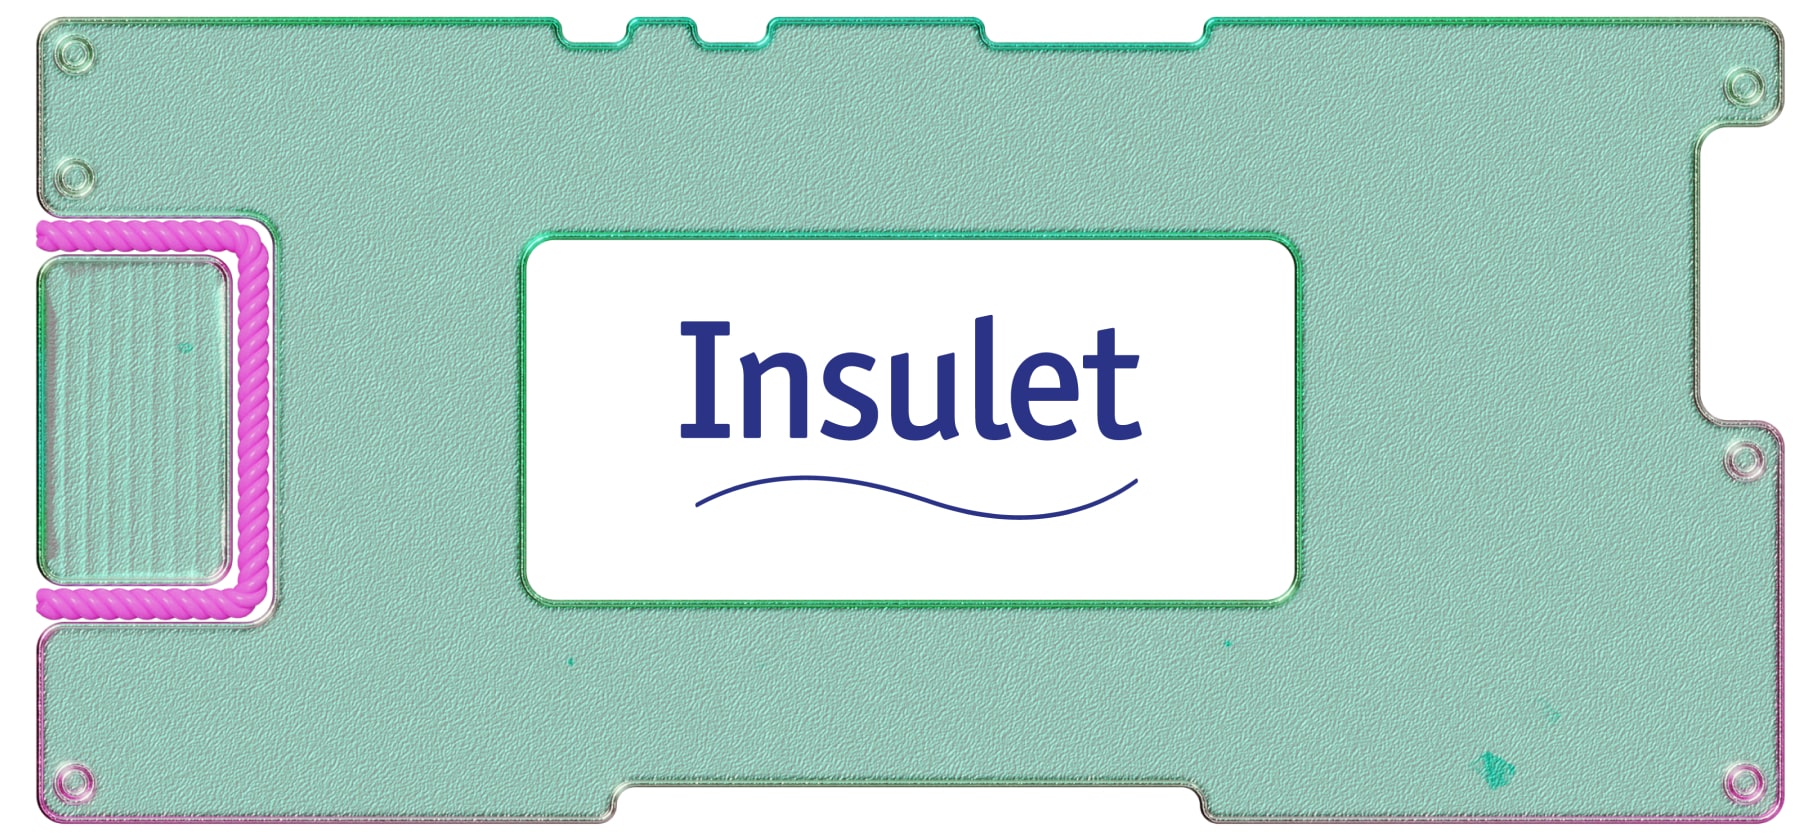 Обзор Insulet: крупный производитель инсулиновых помп